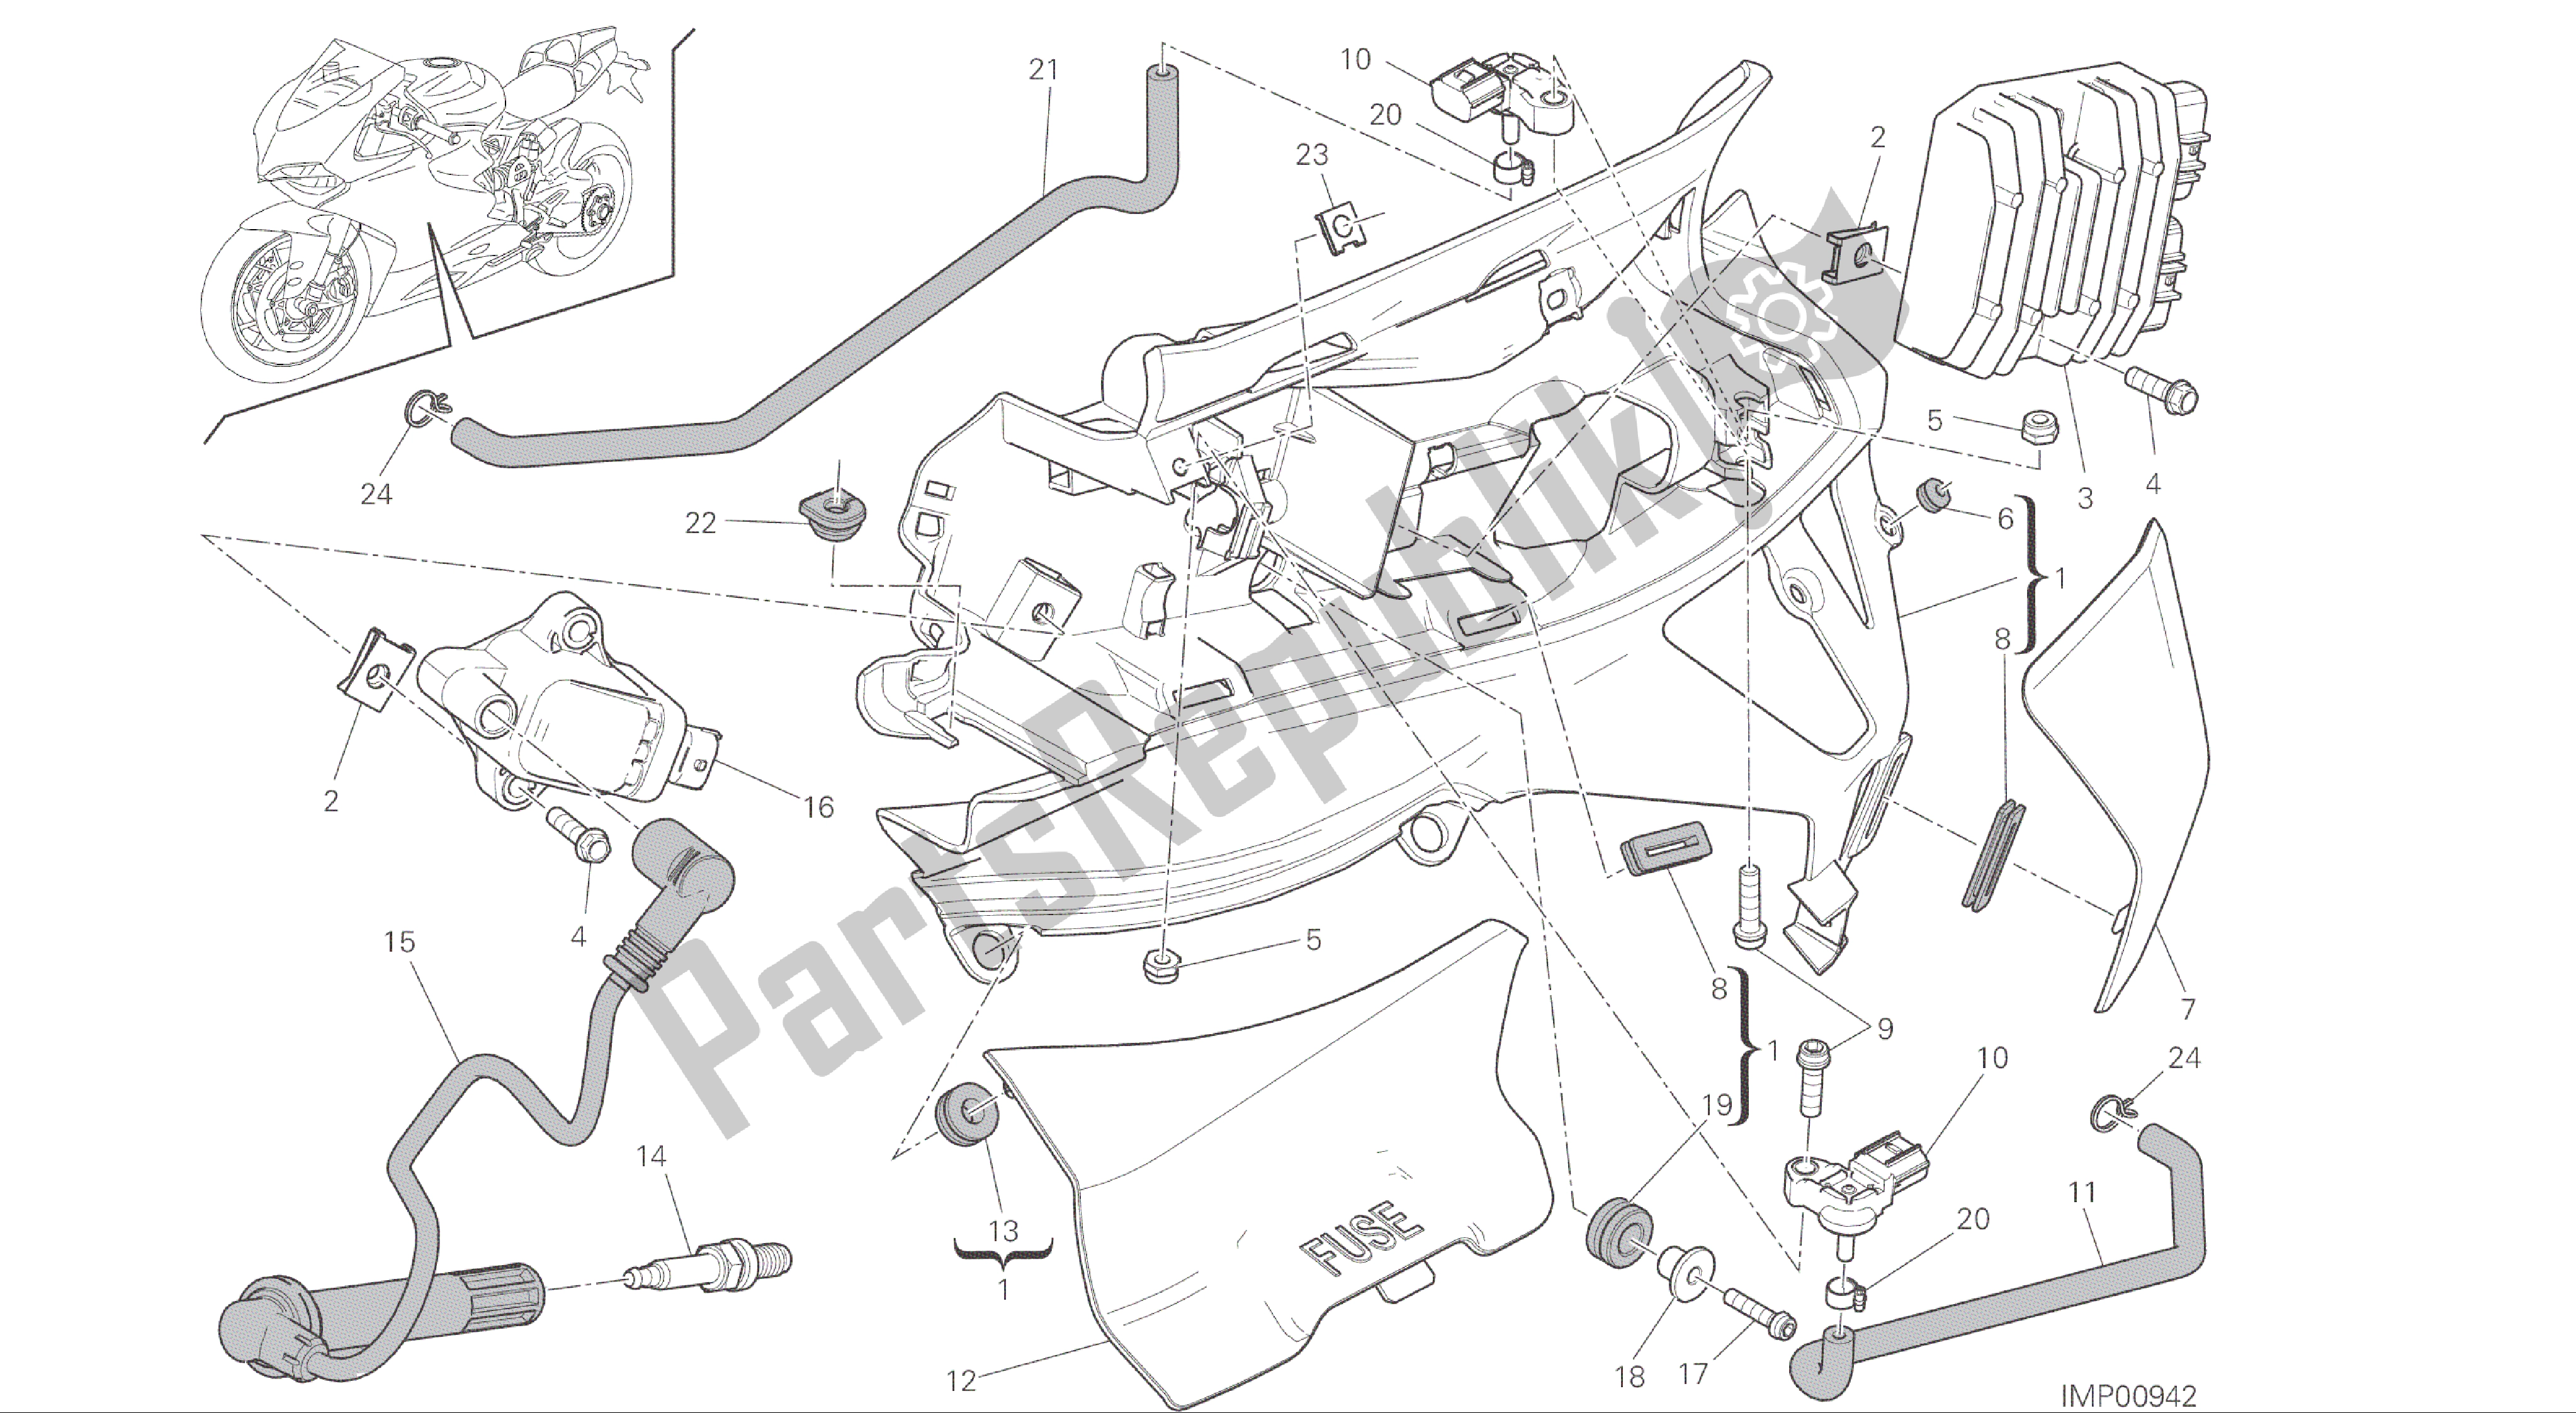 Alle onderdelen voor de Tekening 018 - Impianto Elettrico Sinistro [mod: 1299; Xst: Aus, Eur, Fra, Jap, Twn] Groep Elektrisch van de Ducati Panigale ABS 1299 2016